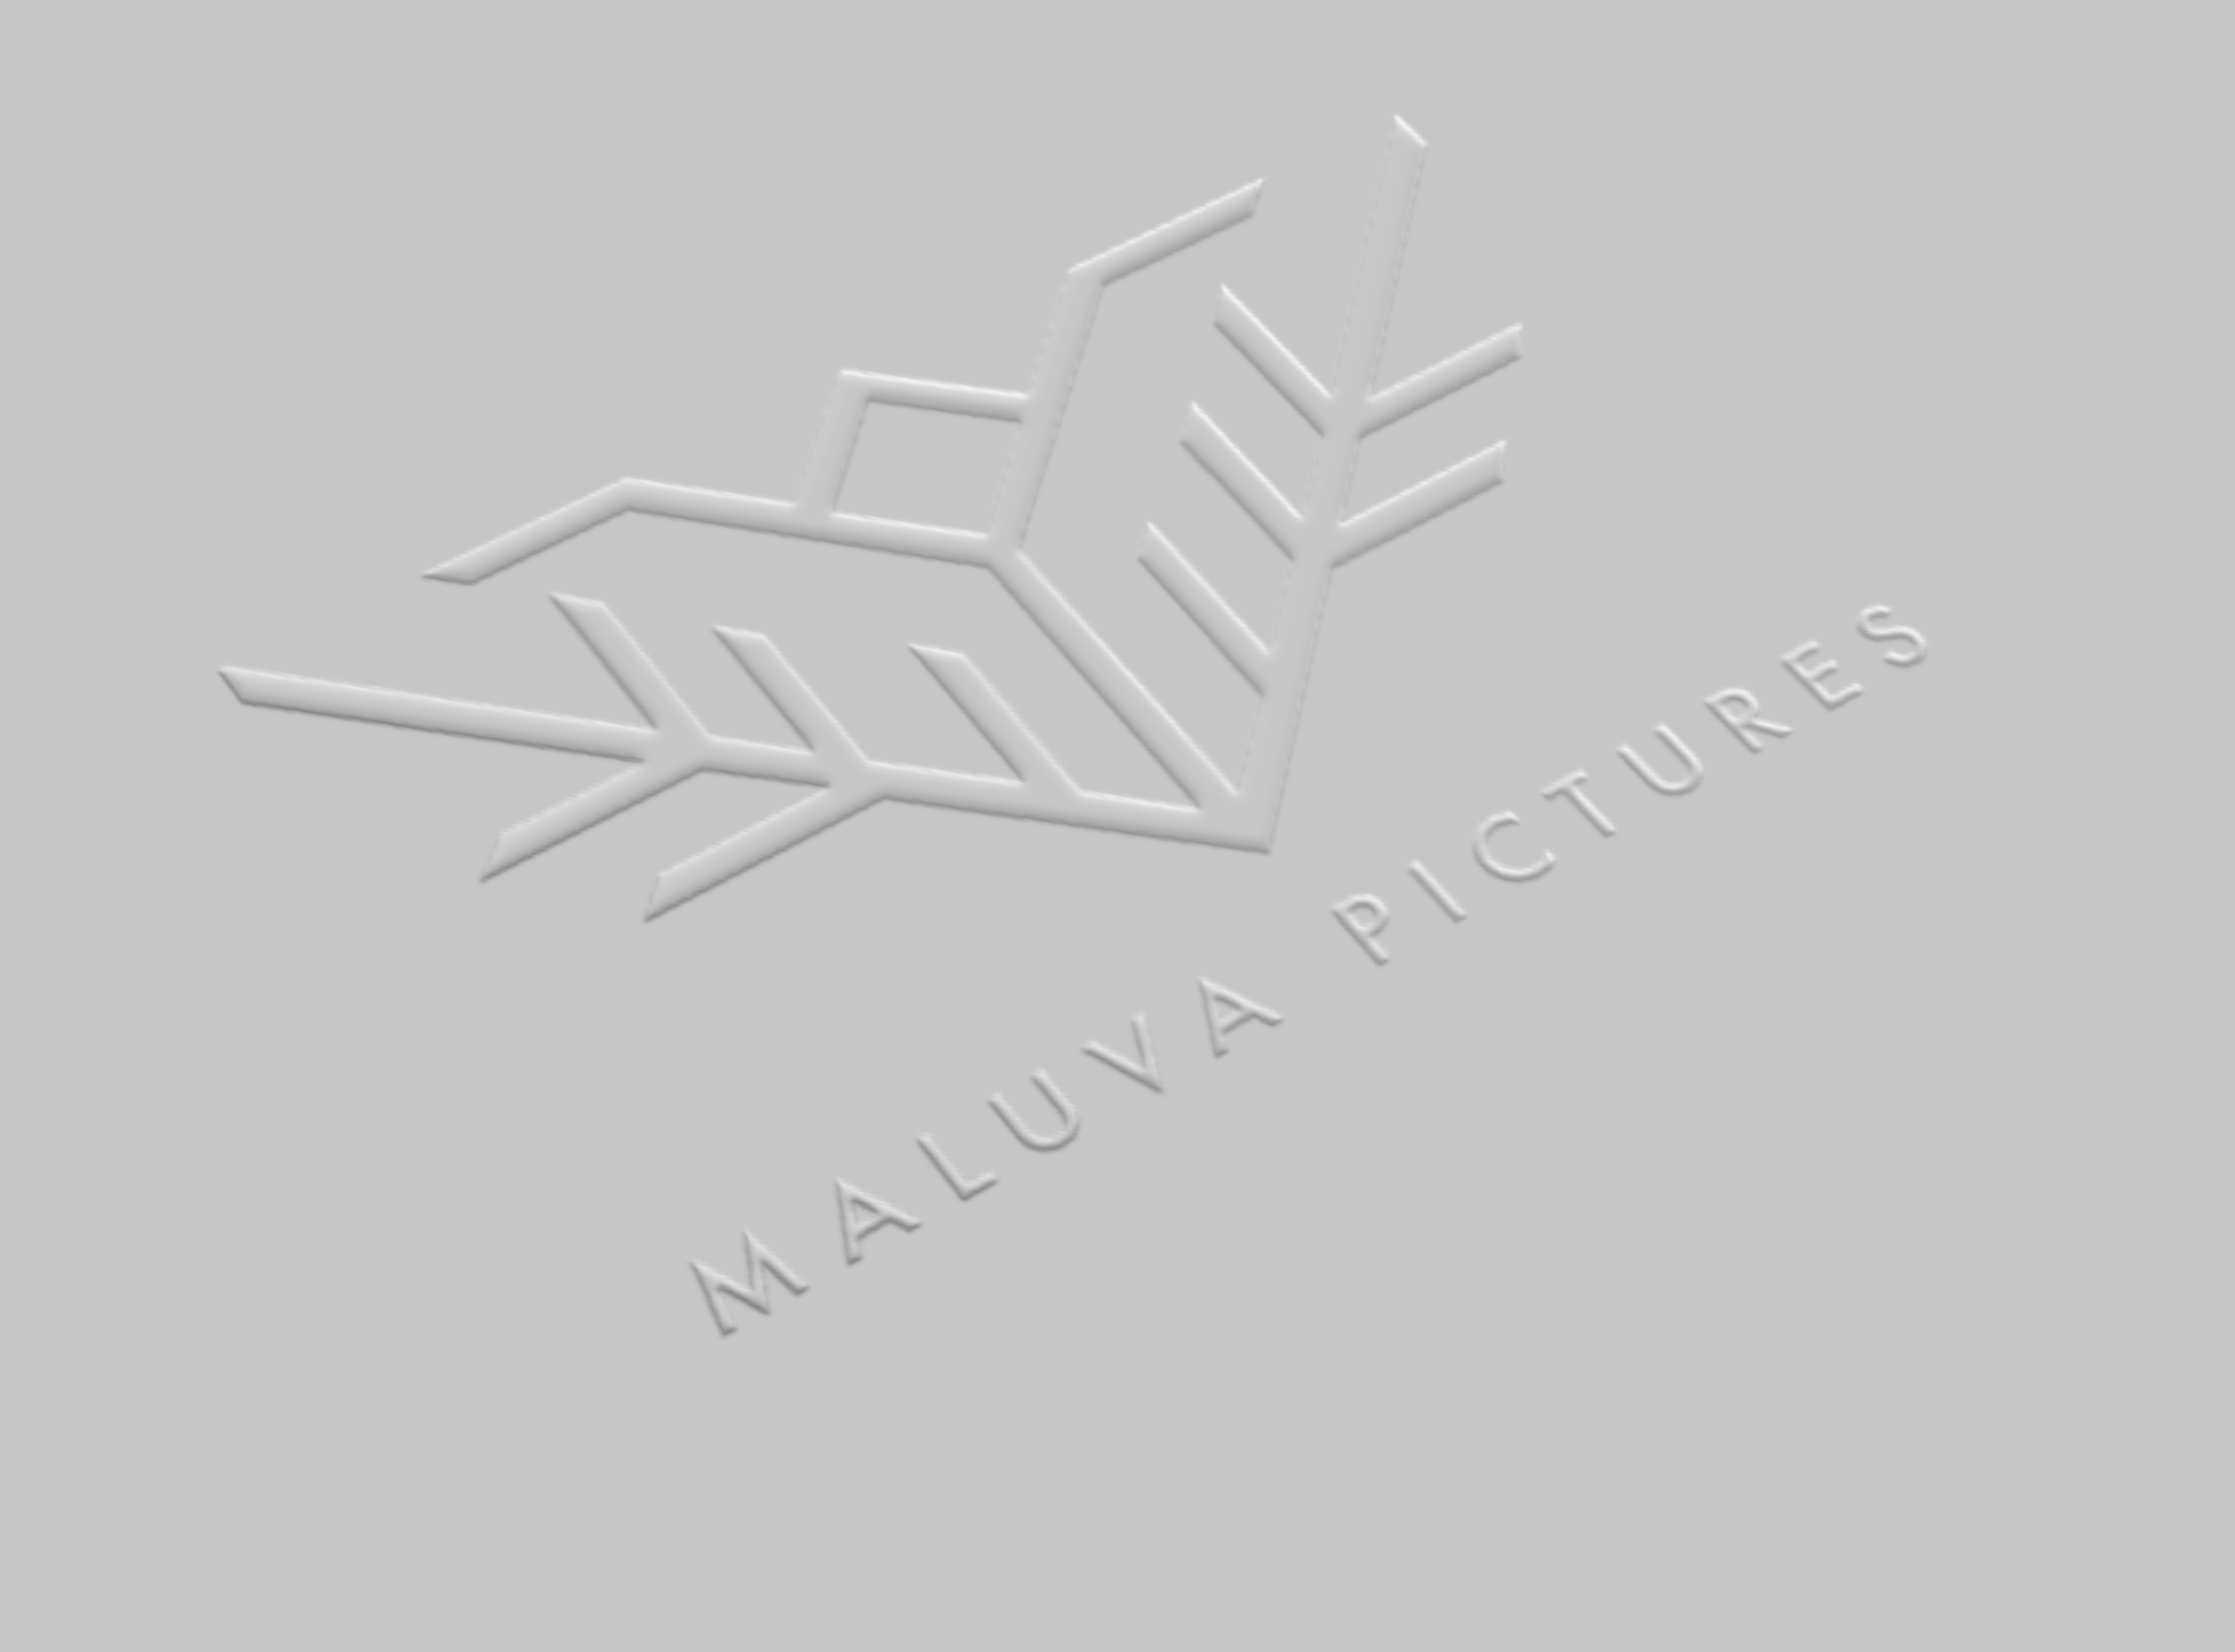 Maluva Pictures